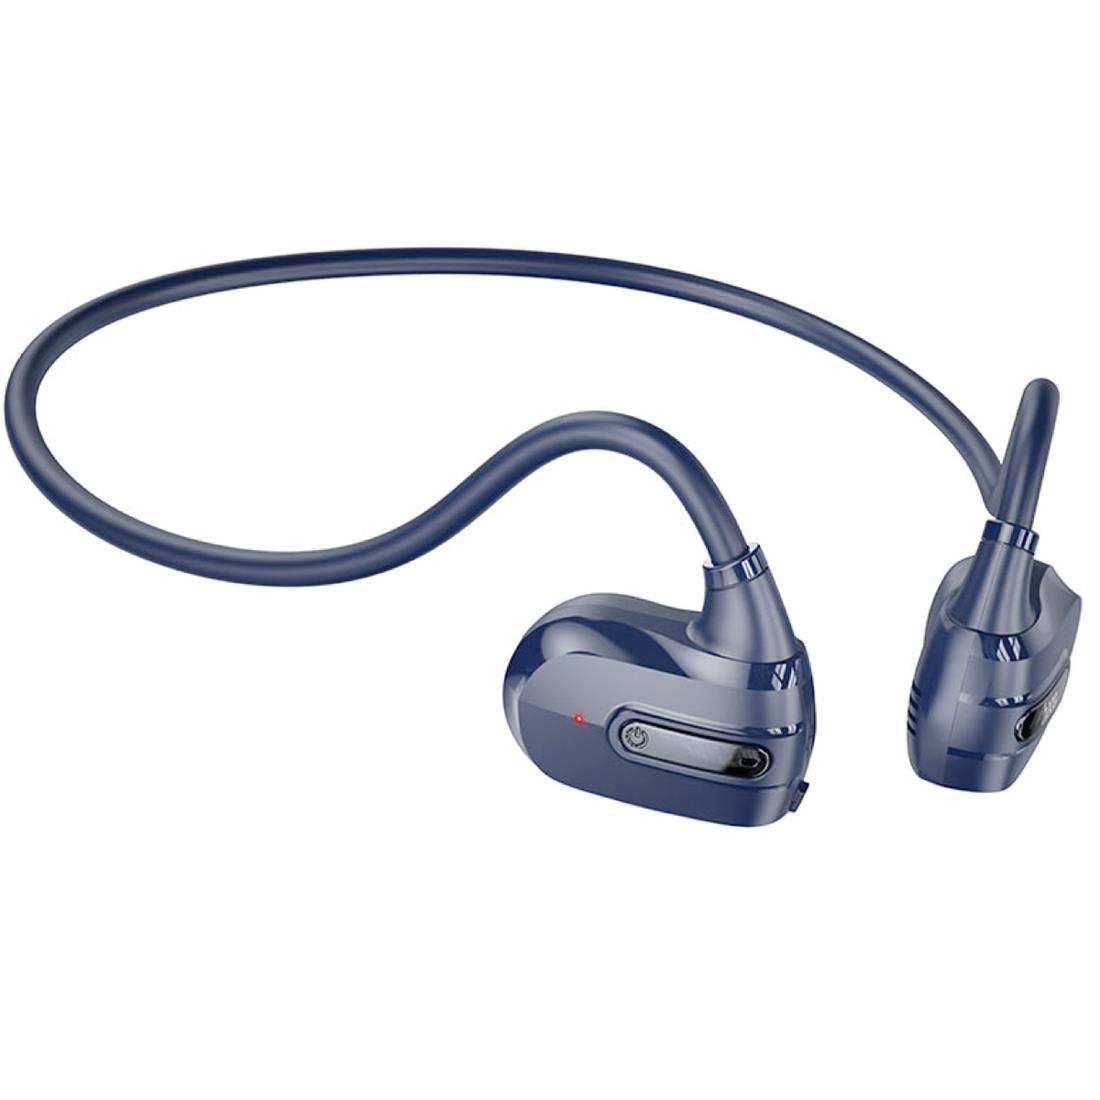 6,61 US$-Auriculares con cable para móviles Auriculares deportivos In Ear  35 Auriculares deportivos Headse-Description